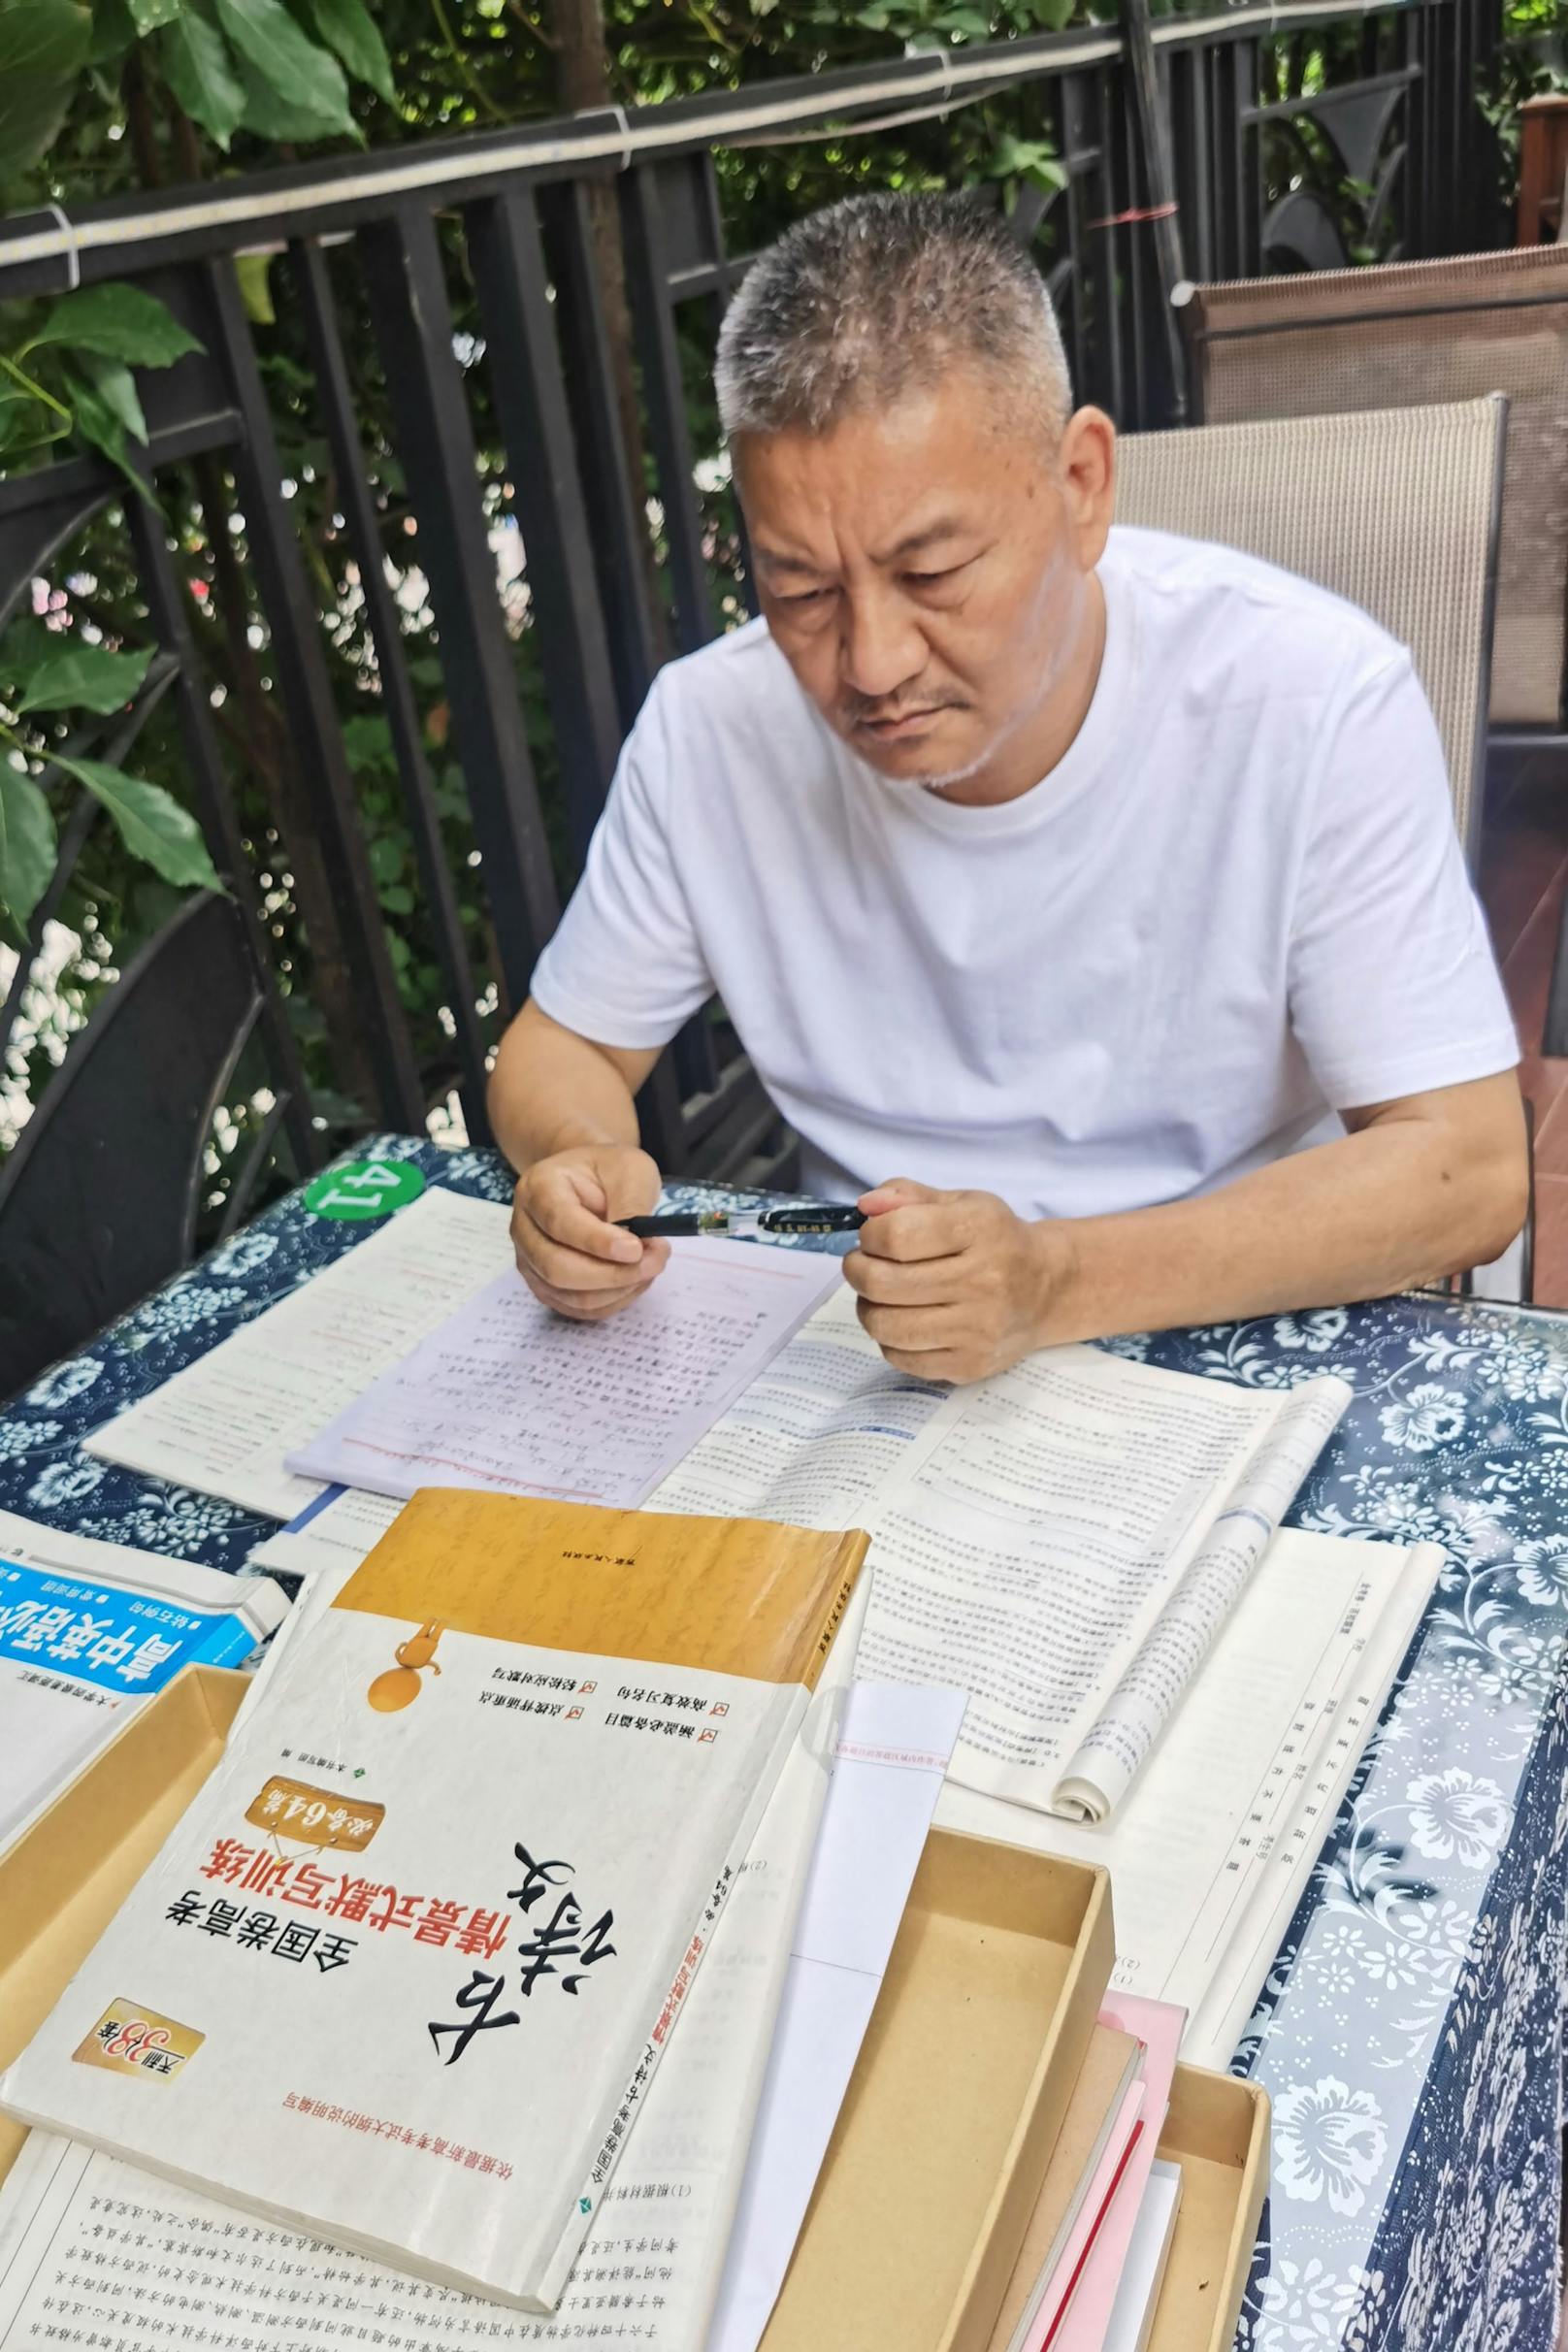 Liang Shi (63) ist am Boden zerstört, nachdem auch sein 27. Anlauf zur Aufnahme an der Uni erfolglos blieb.